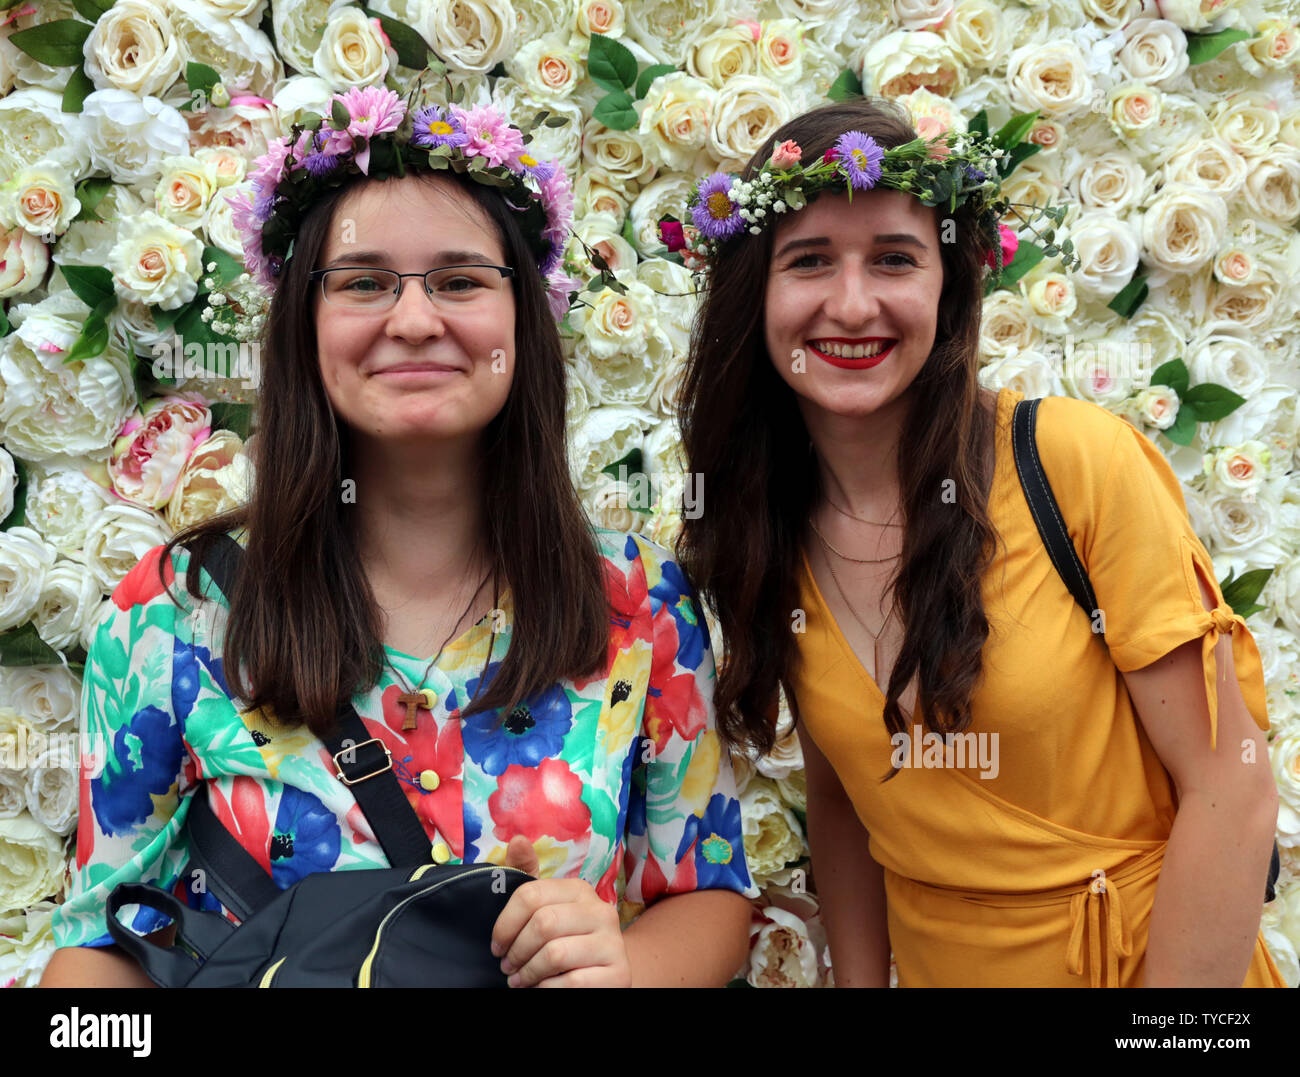 Krakau. Krakau. Polen. Mädchen und Frauen mit Blumen Kränze an der jährlichen Mittsommer Festival' Kränze' ('Wianki" in Polnisch). Stockfoto